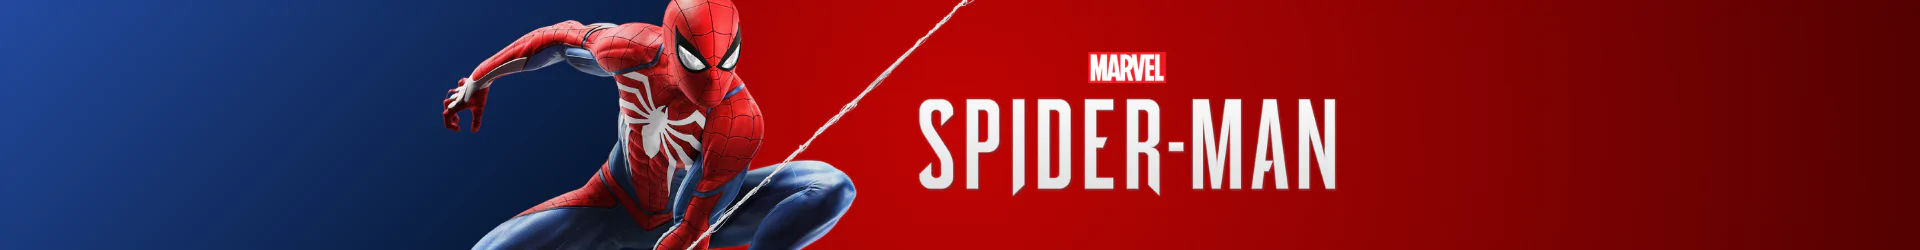 Spider-Man taschen banner